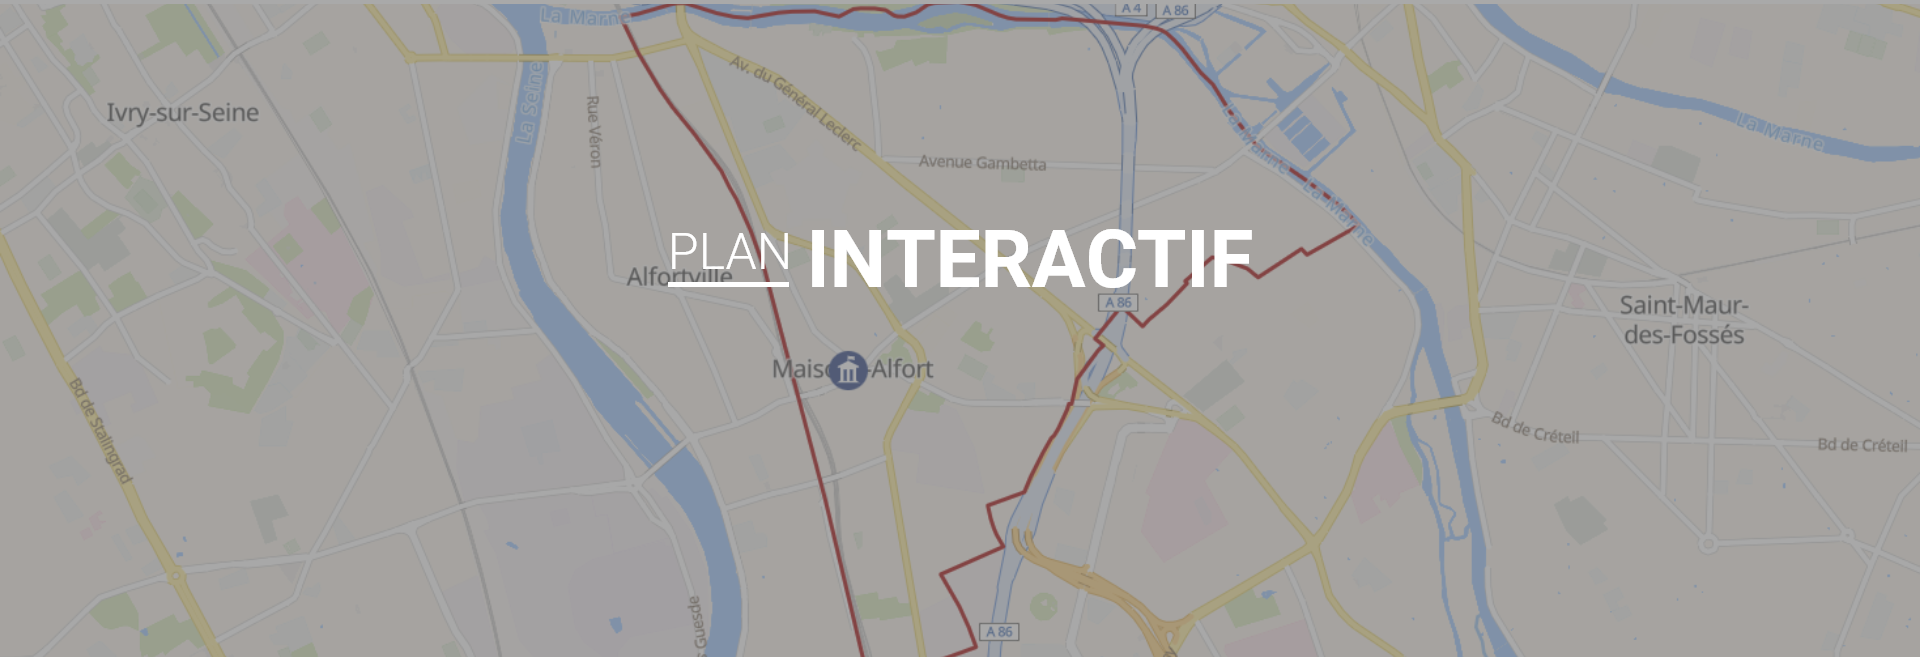 Plan interactif